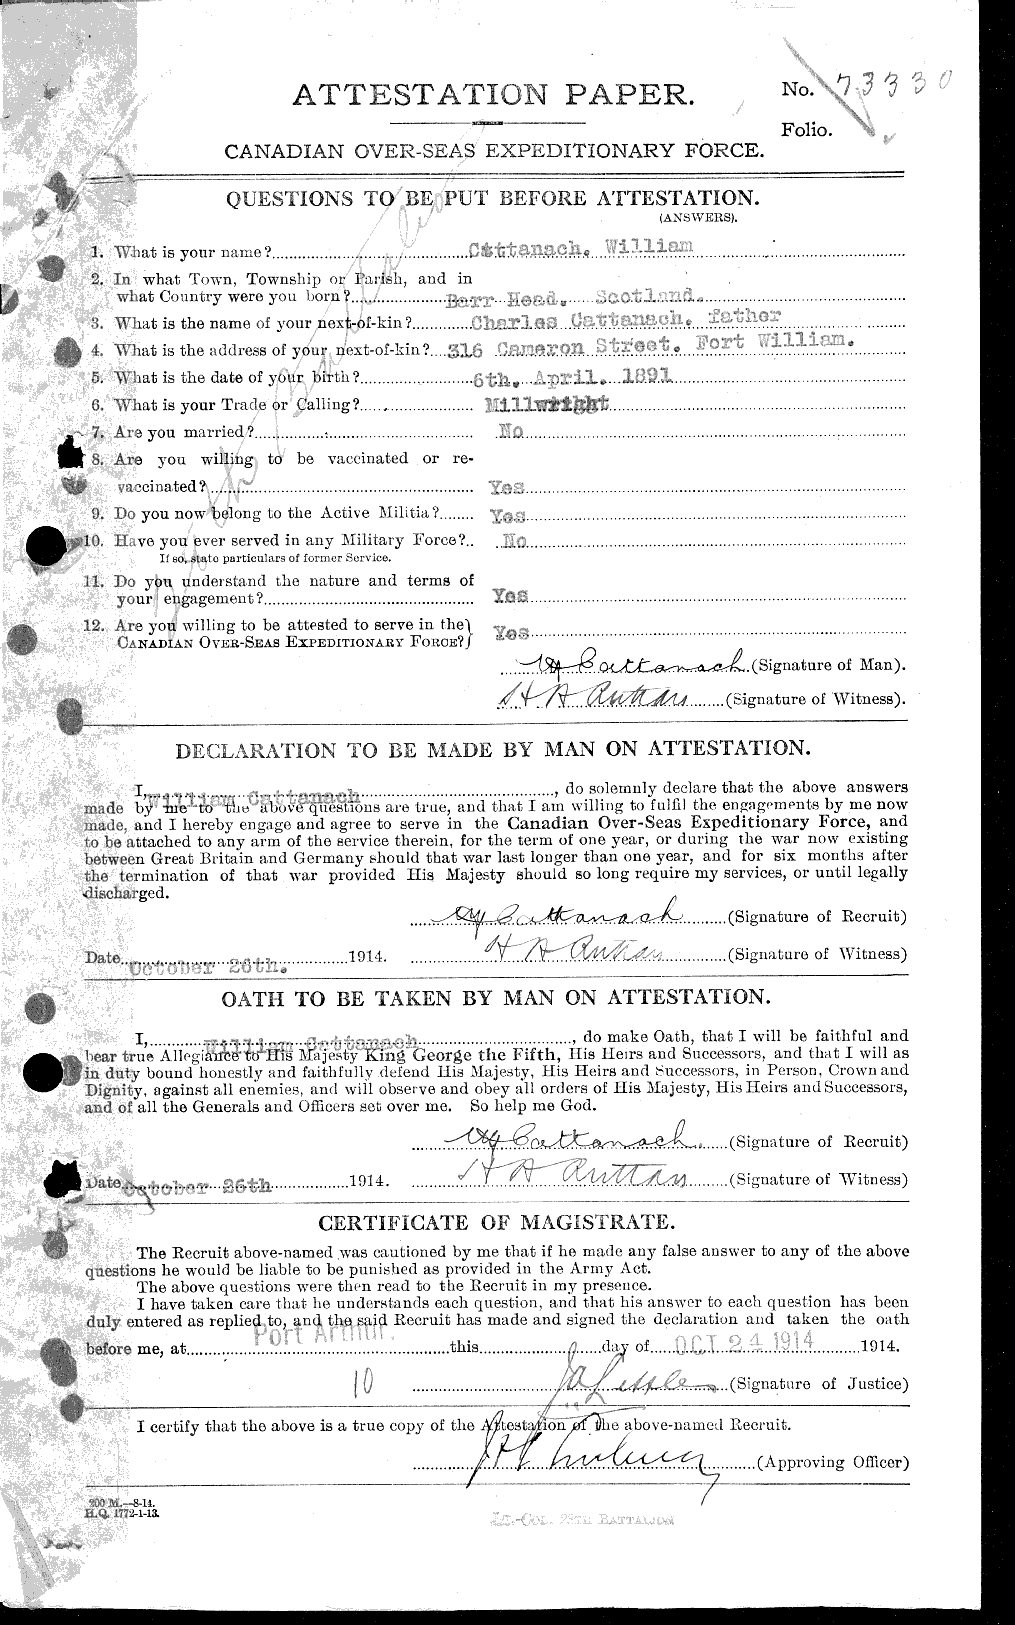 Dossiers du Personnel de la Première Guerre mondiale - CEC 013314a